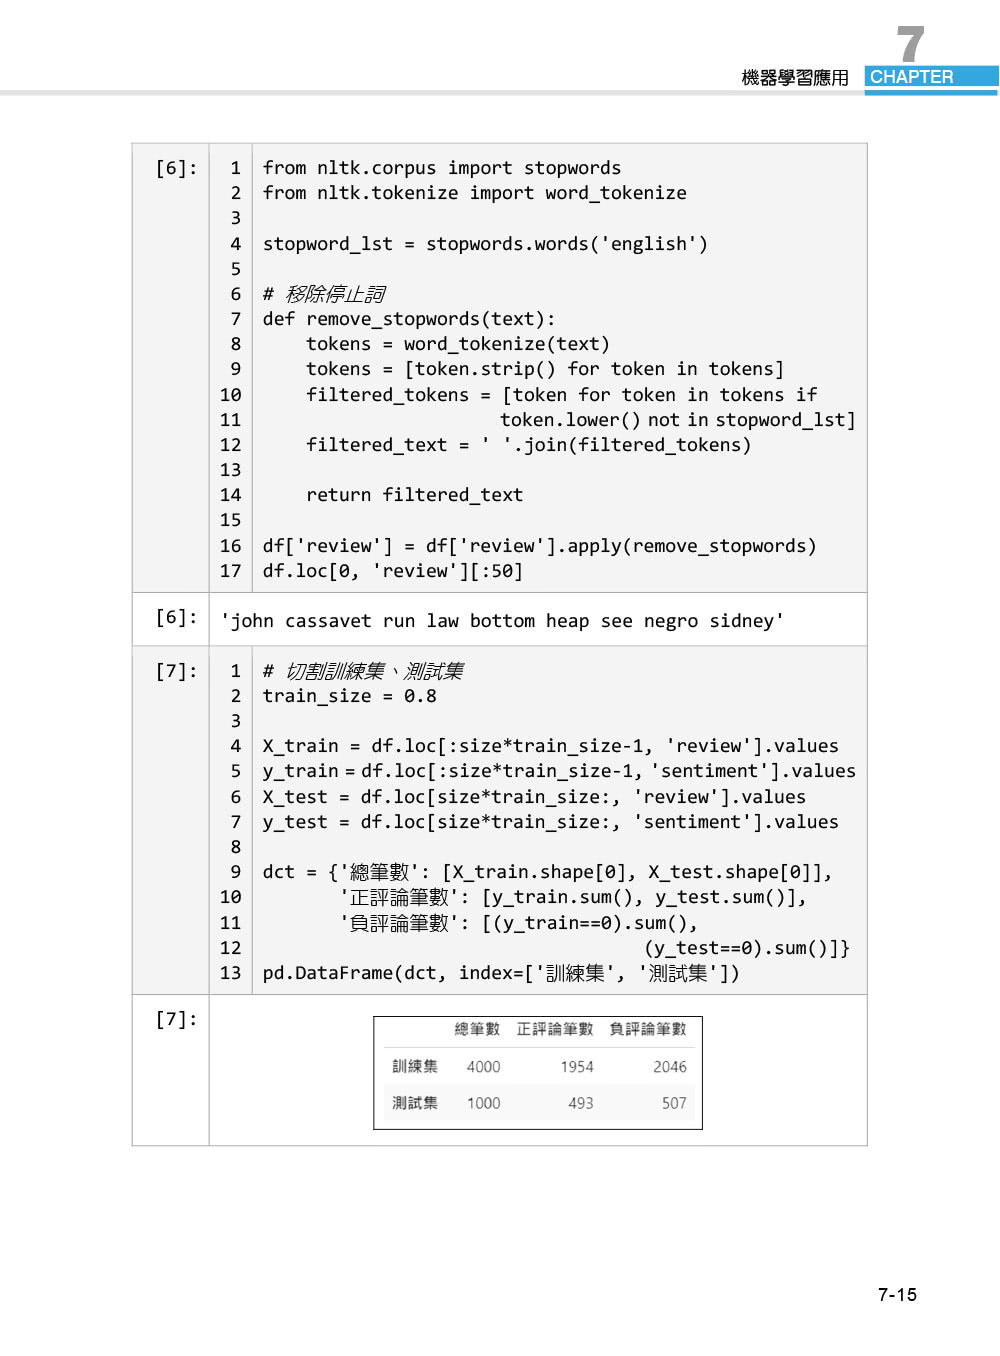 TQC＋ Python3.x 機器學習基礎與應用特訓教材